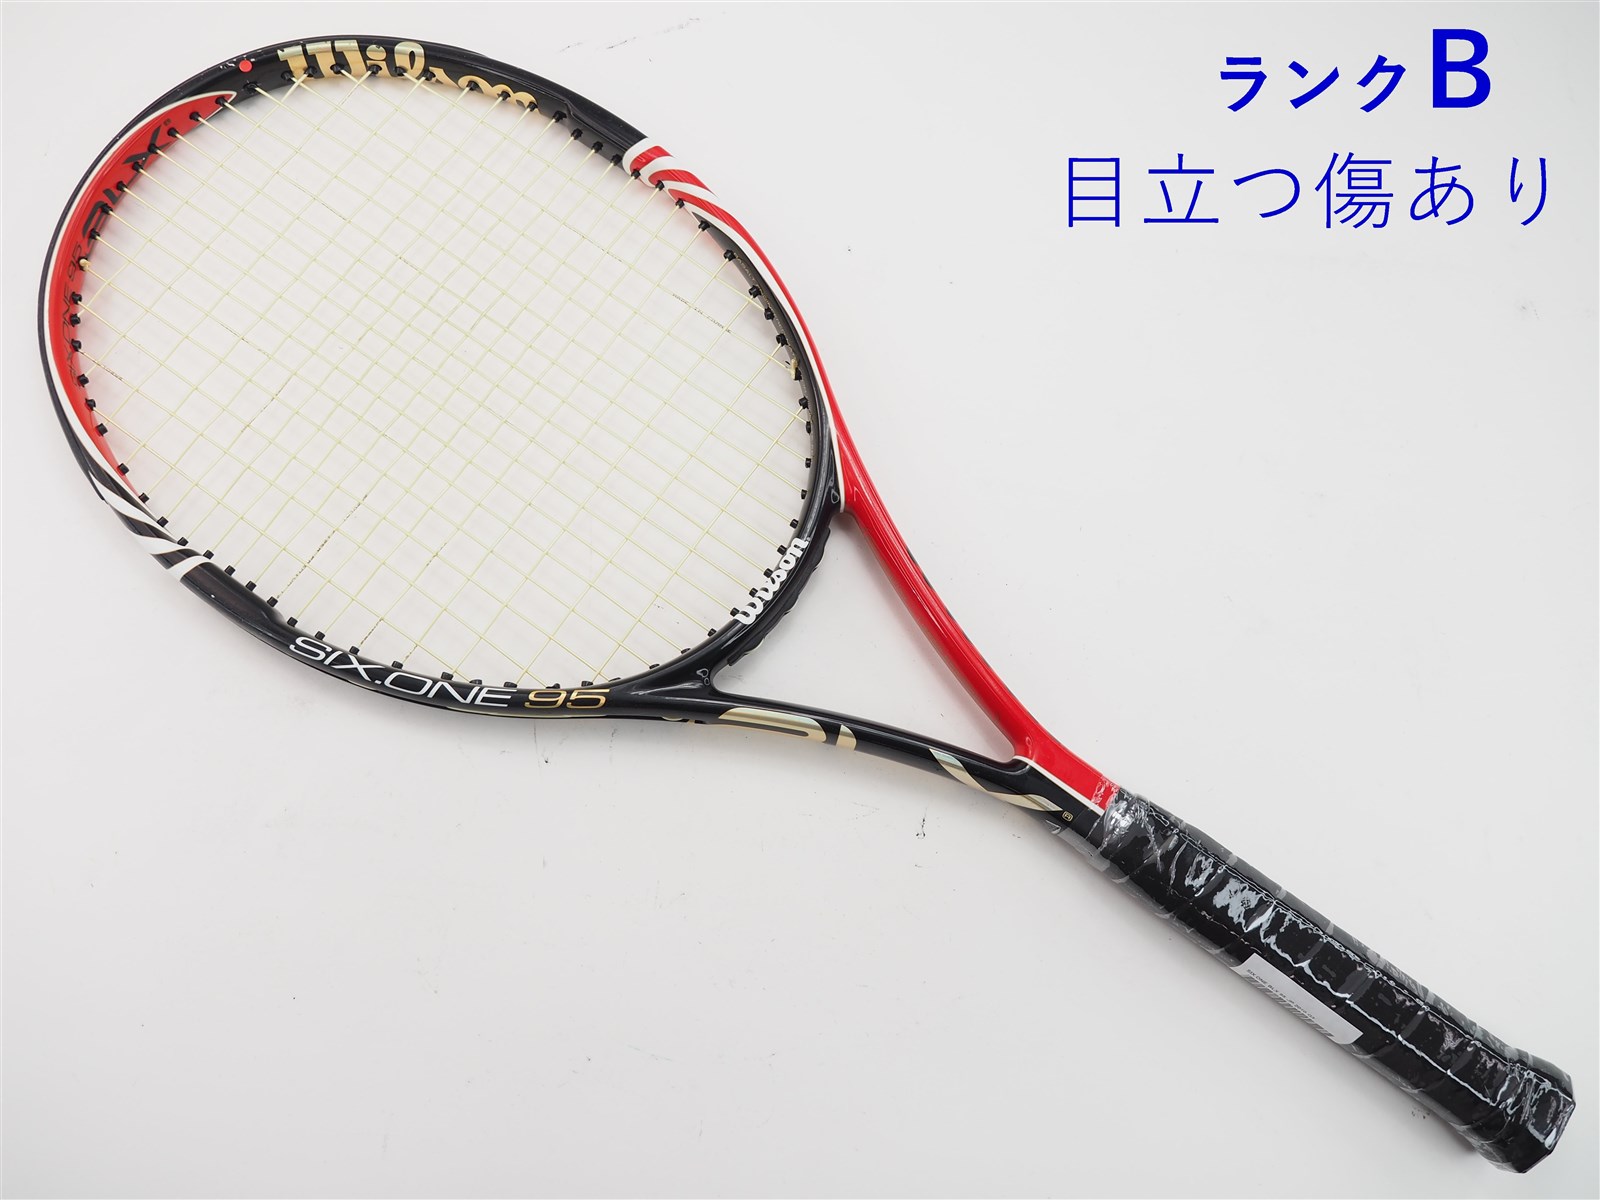 訳ありテニスラケット 5本  メーカー ばらばら【1640】